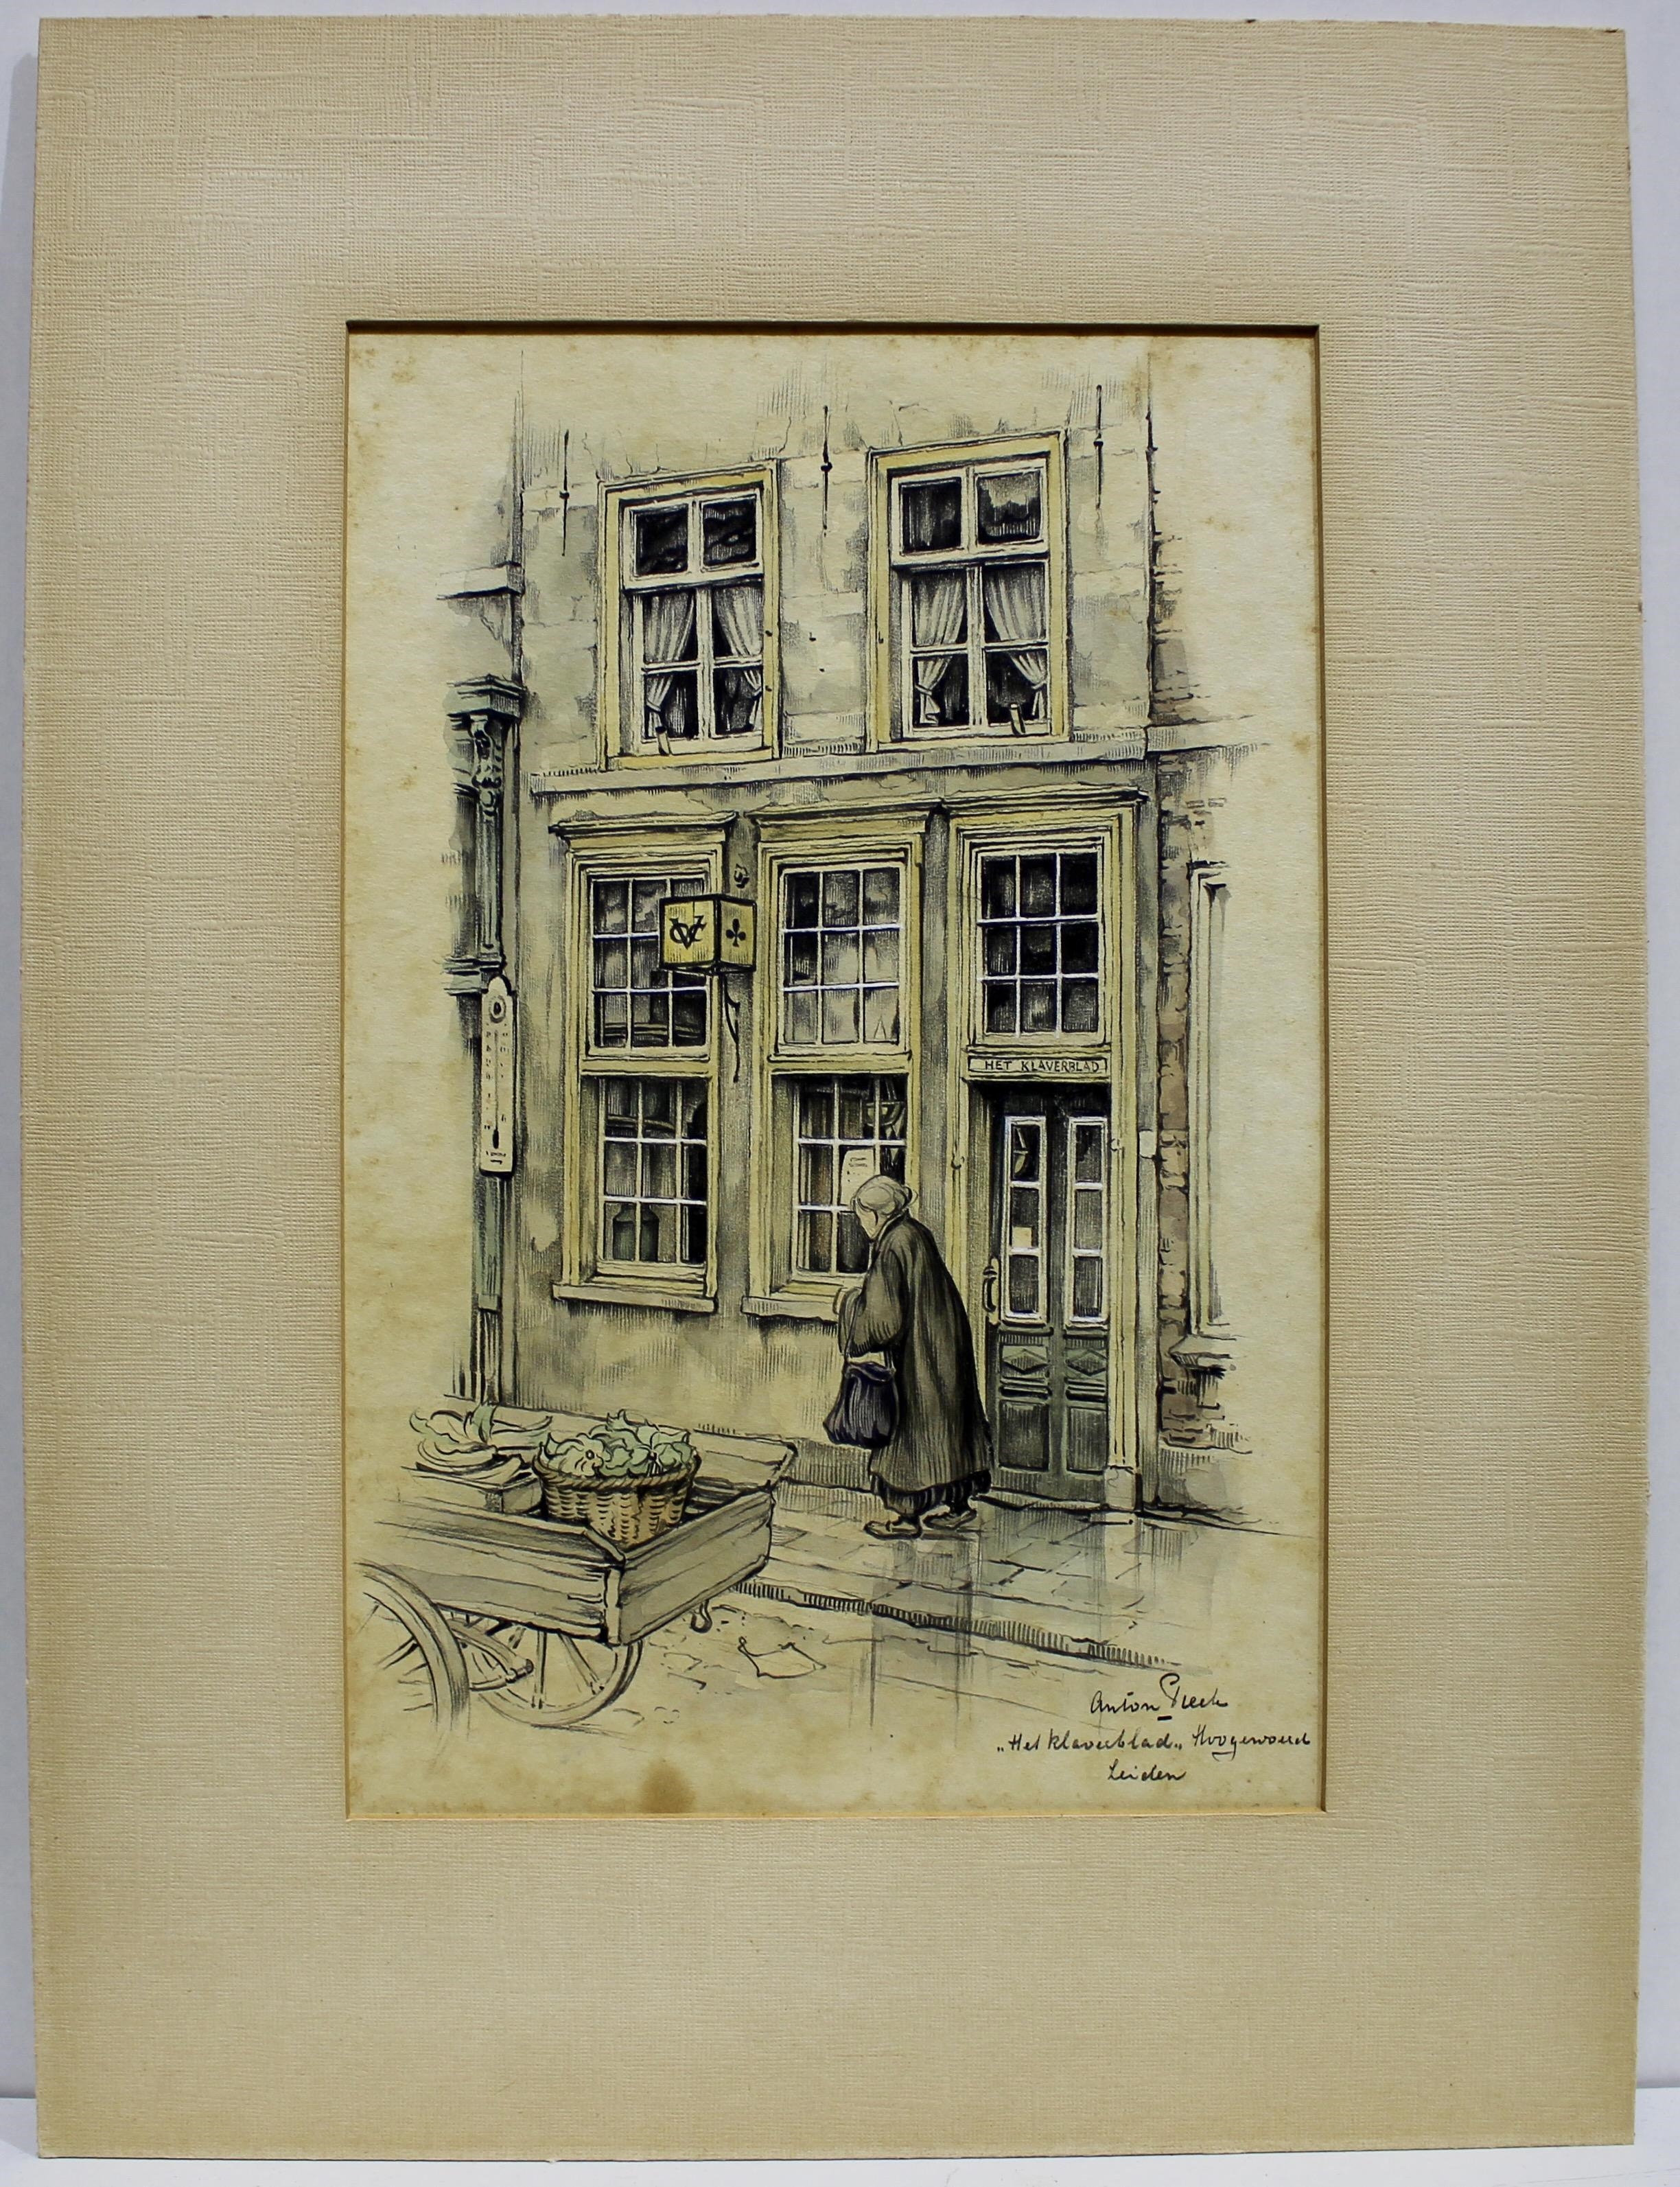 Artwork by Anton Franciscus‏ Pieck, Het klaverblad in Leiden, Made of watercolor